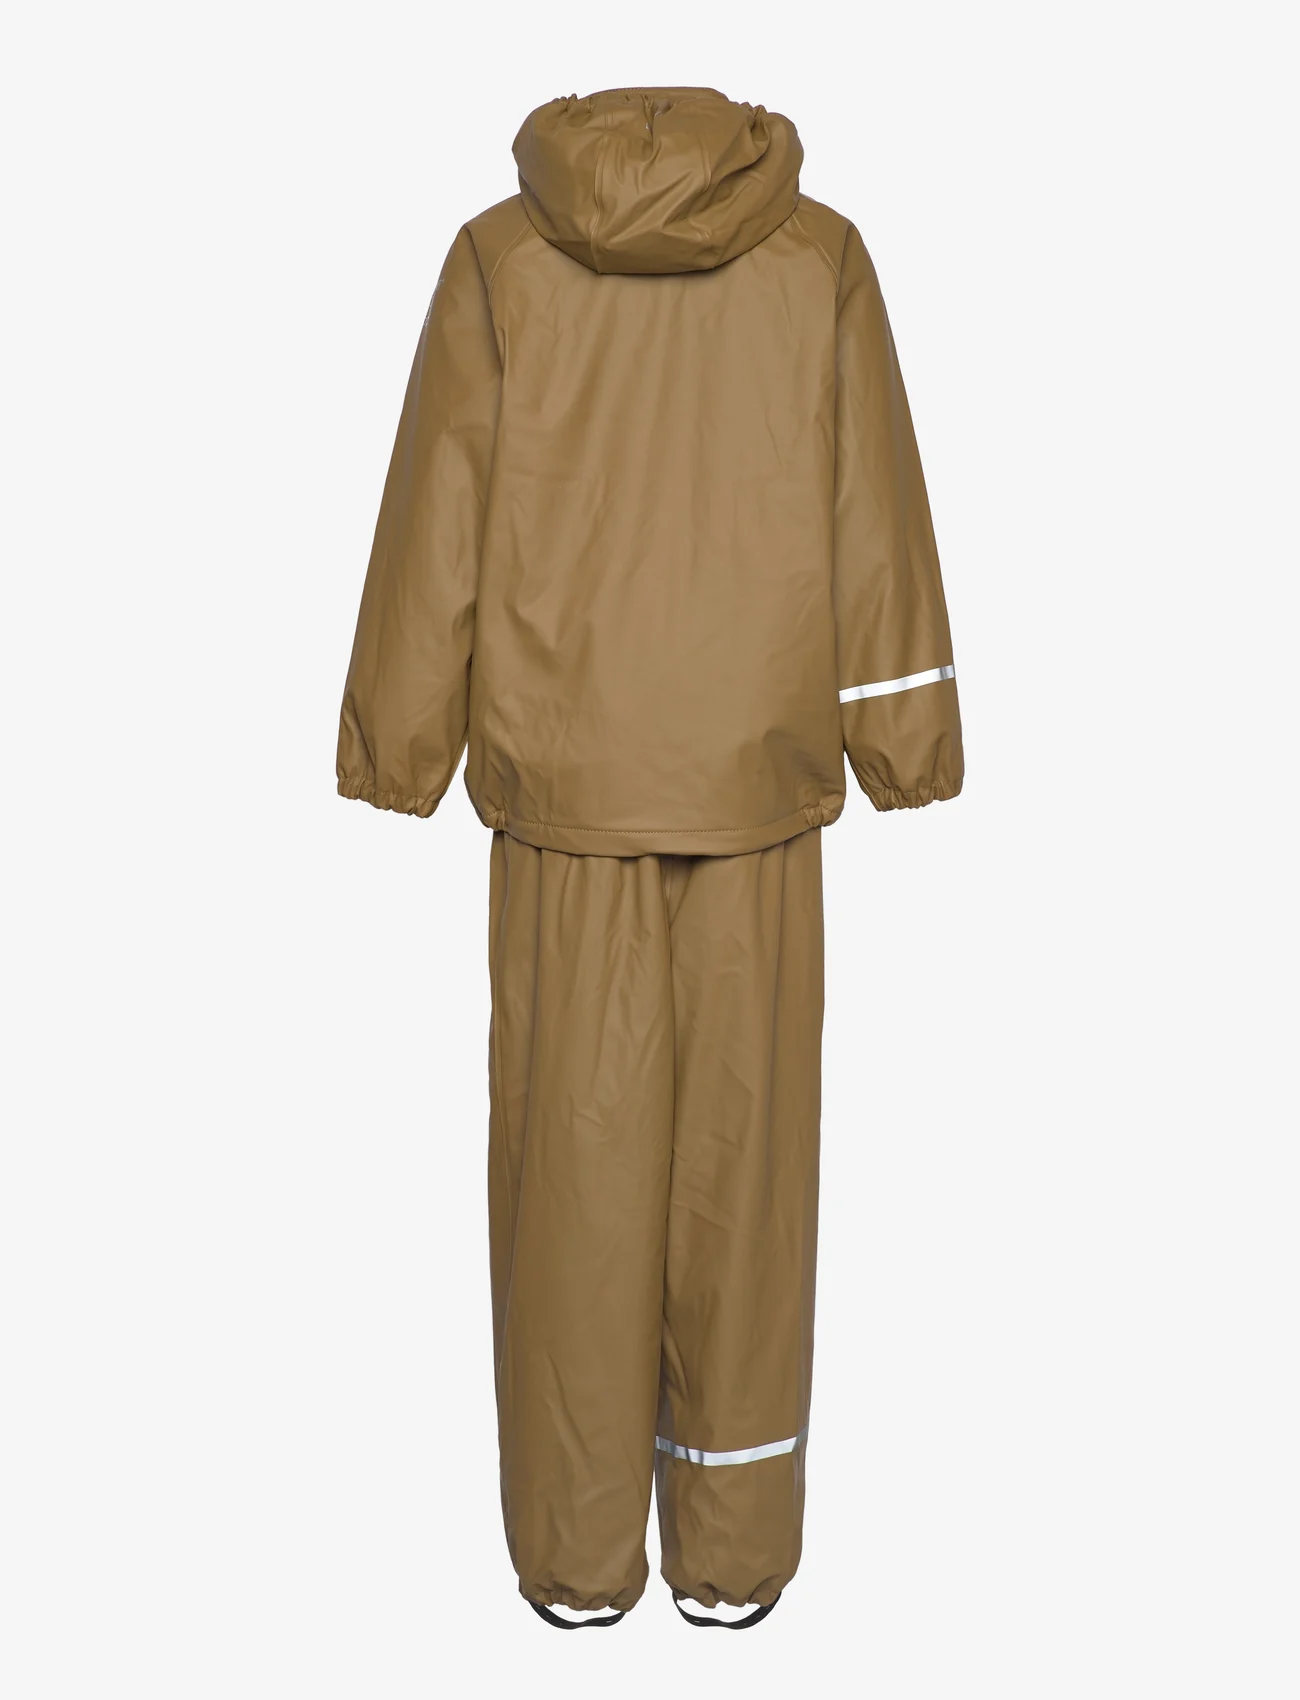 CeLaVi - Rainwear Set -Solid, w.fleece - Žieminiai kombinezonai - nutria - 1